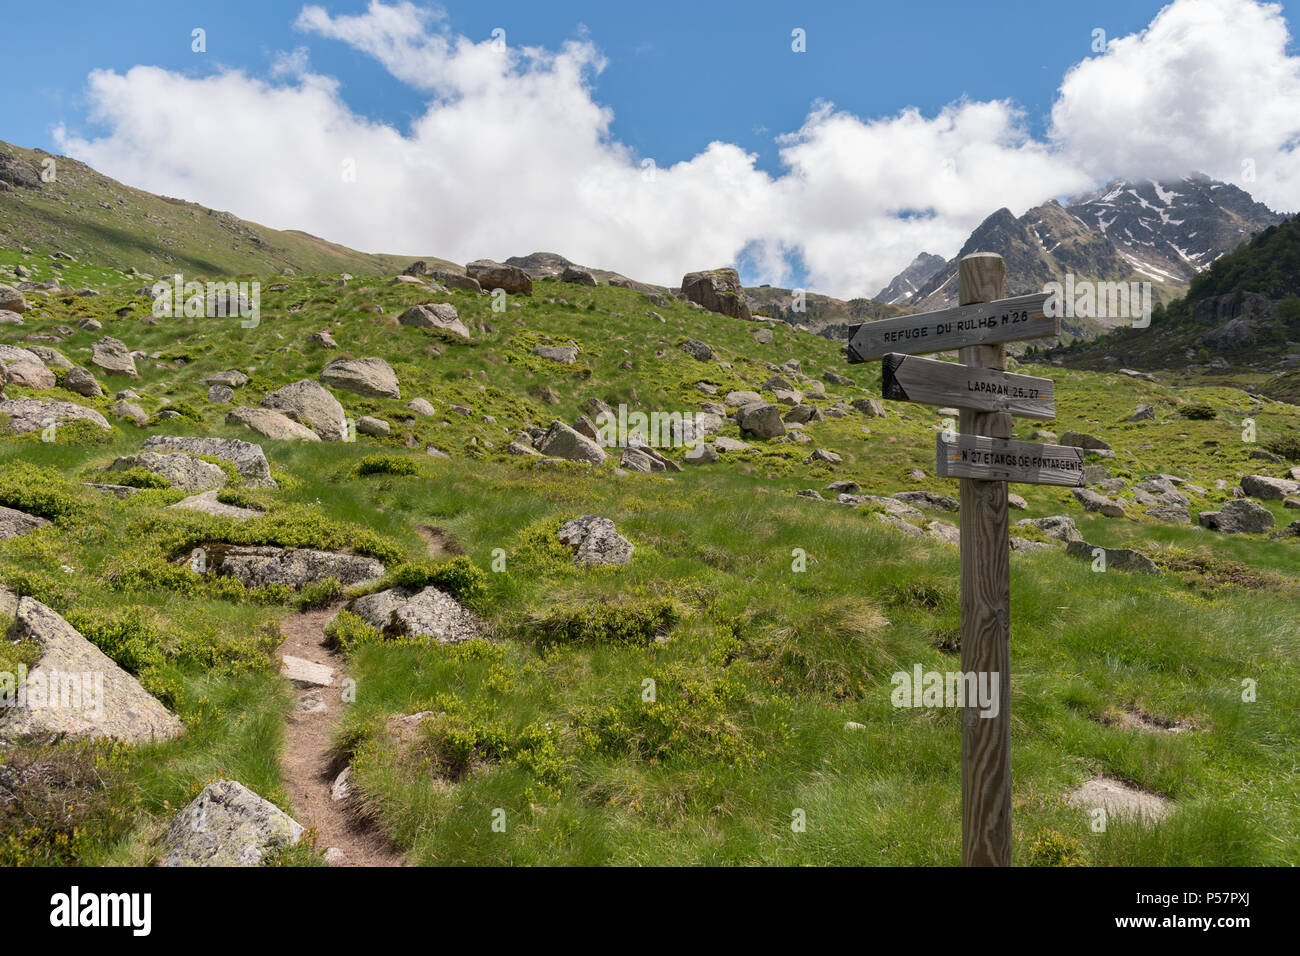 Fingerpost en bois dans les Pyrénées françaises pointant le long d'un sentier menant au refuge du Rulhe, Laparin et les étangs de Fontargente, sur le GR10 l'itinéraire. Banque D'Images